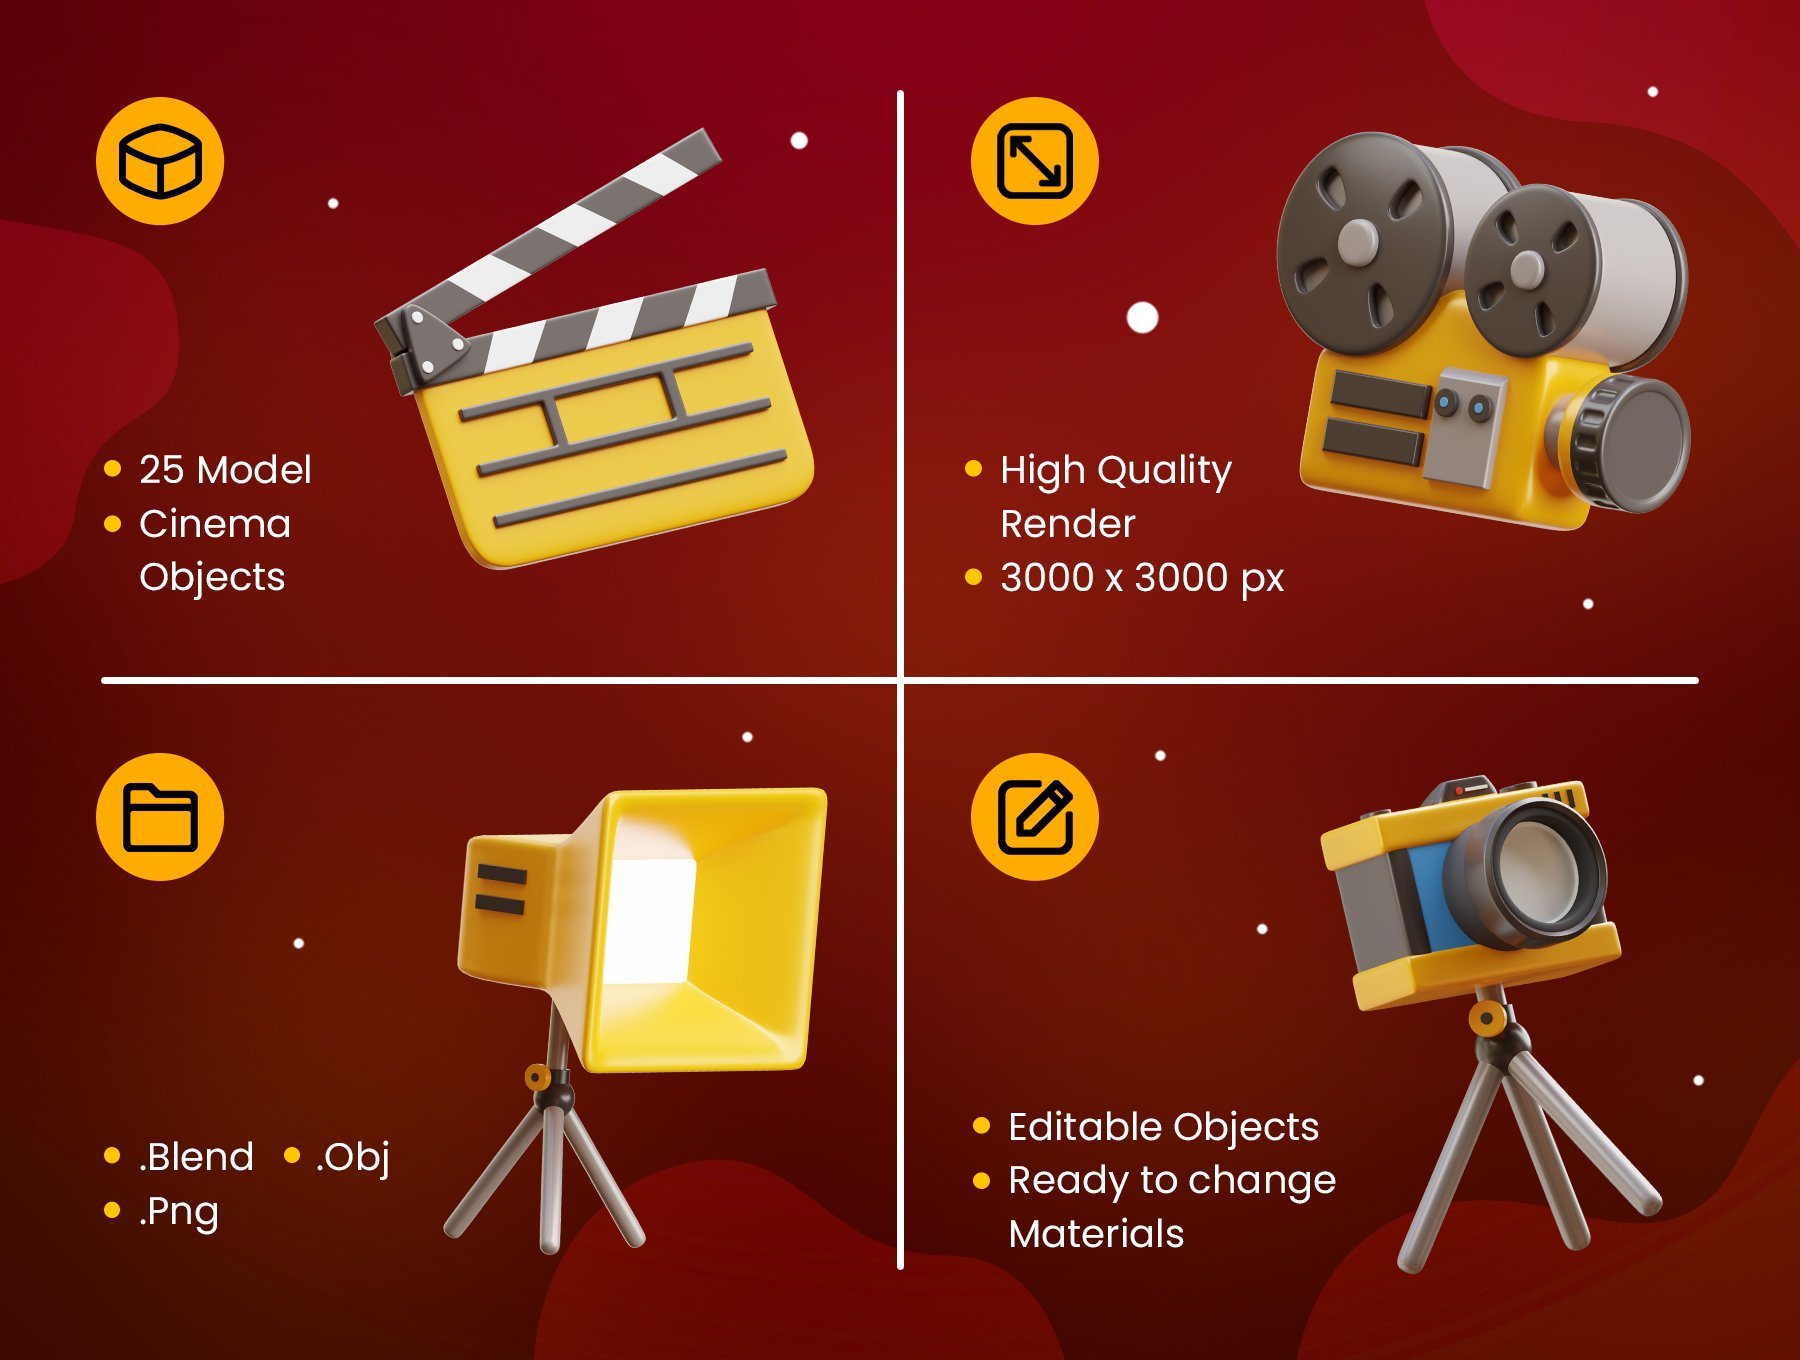 高质量三维渲染影音播放电影院主题3D插画图标素材合辑 Cinema 3D Icons